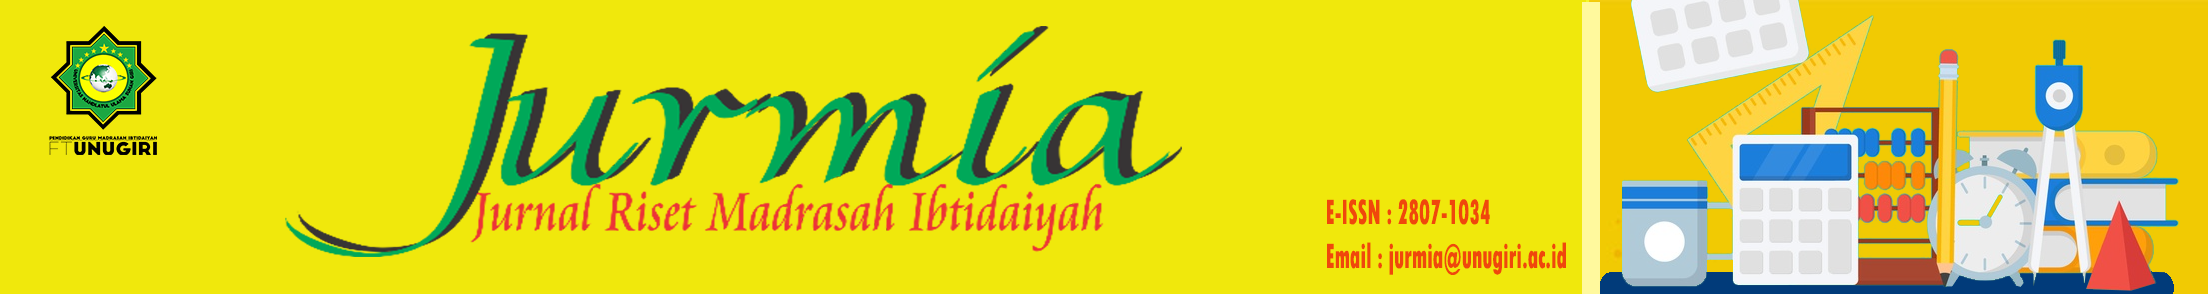 Jurnal Riset Madrasah Ibtidaiyah (JURMIA)